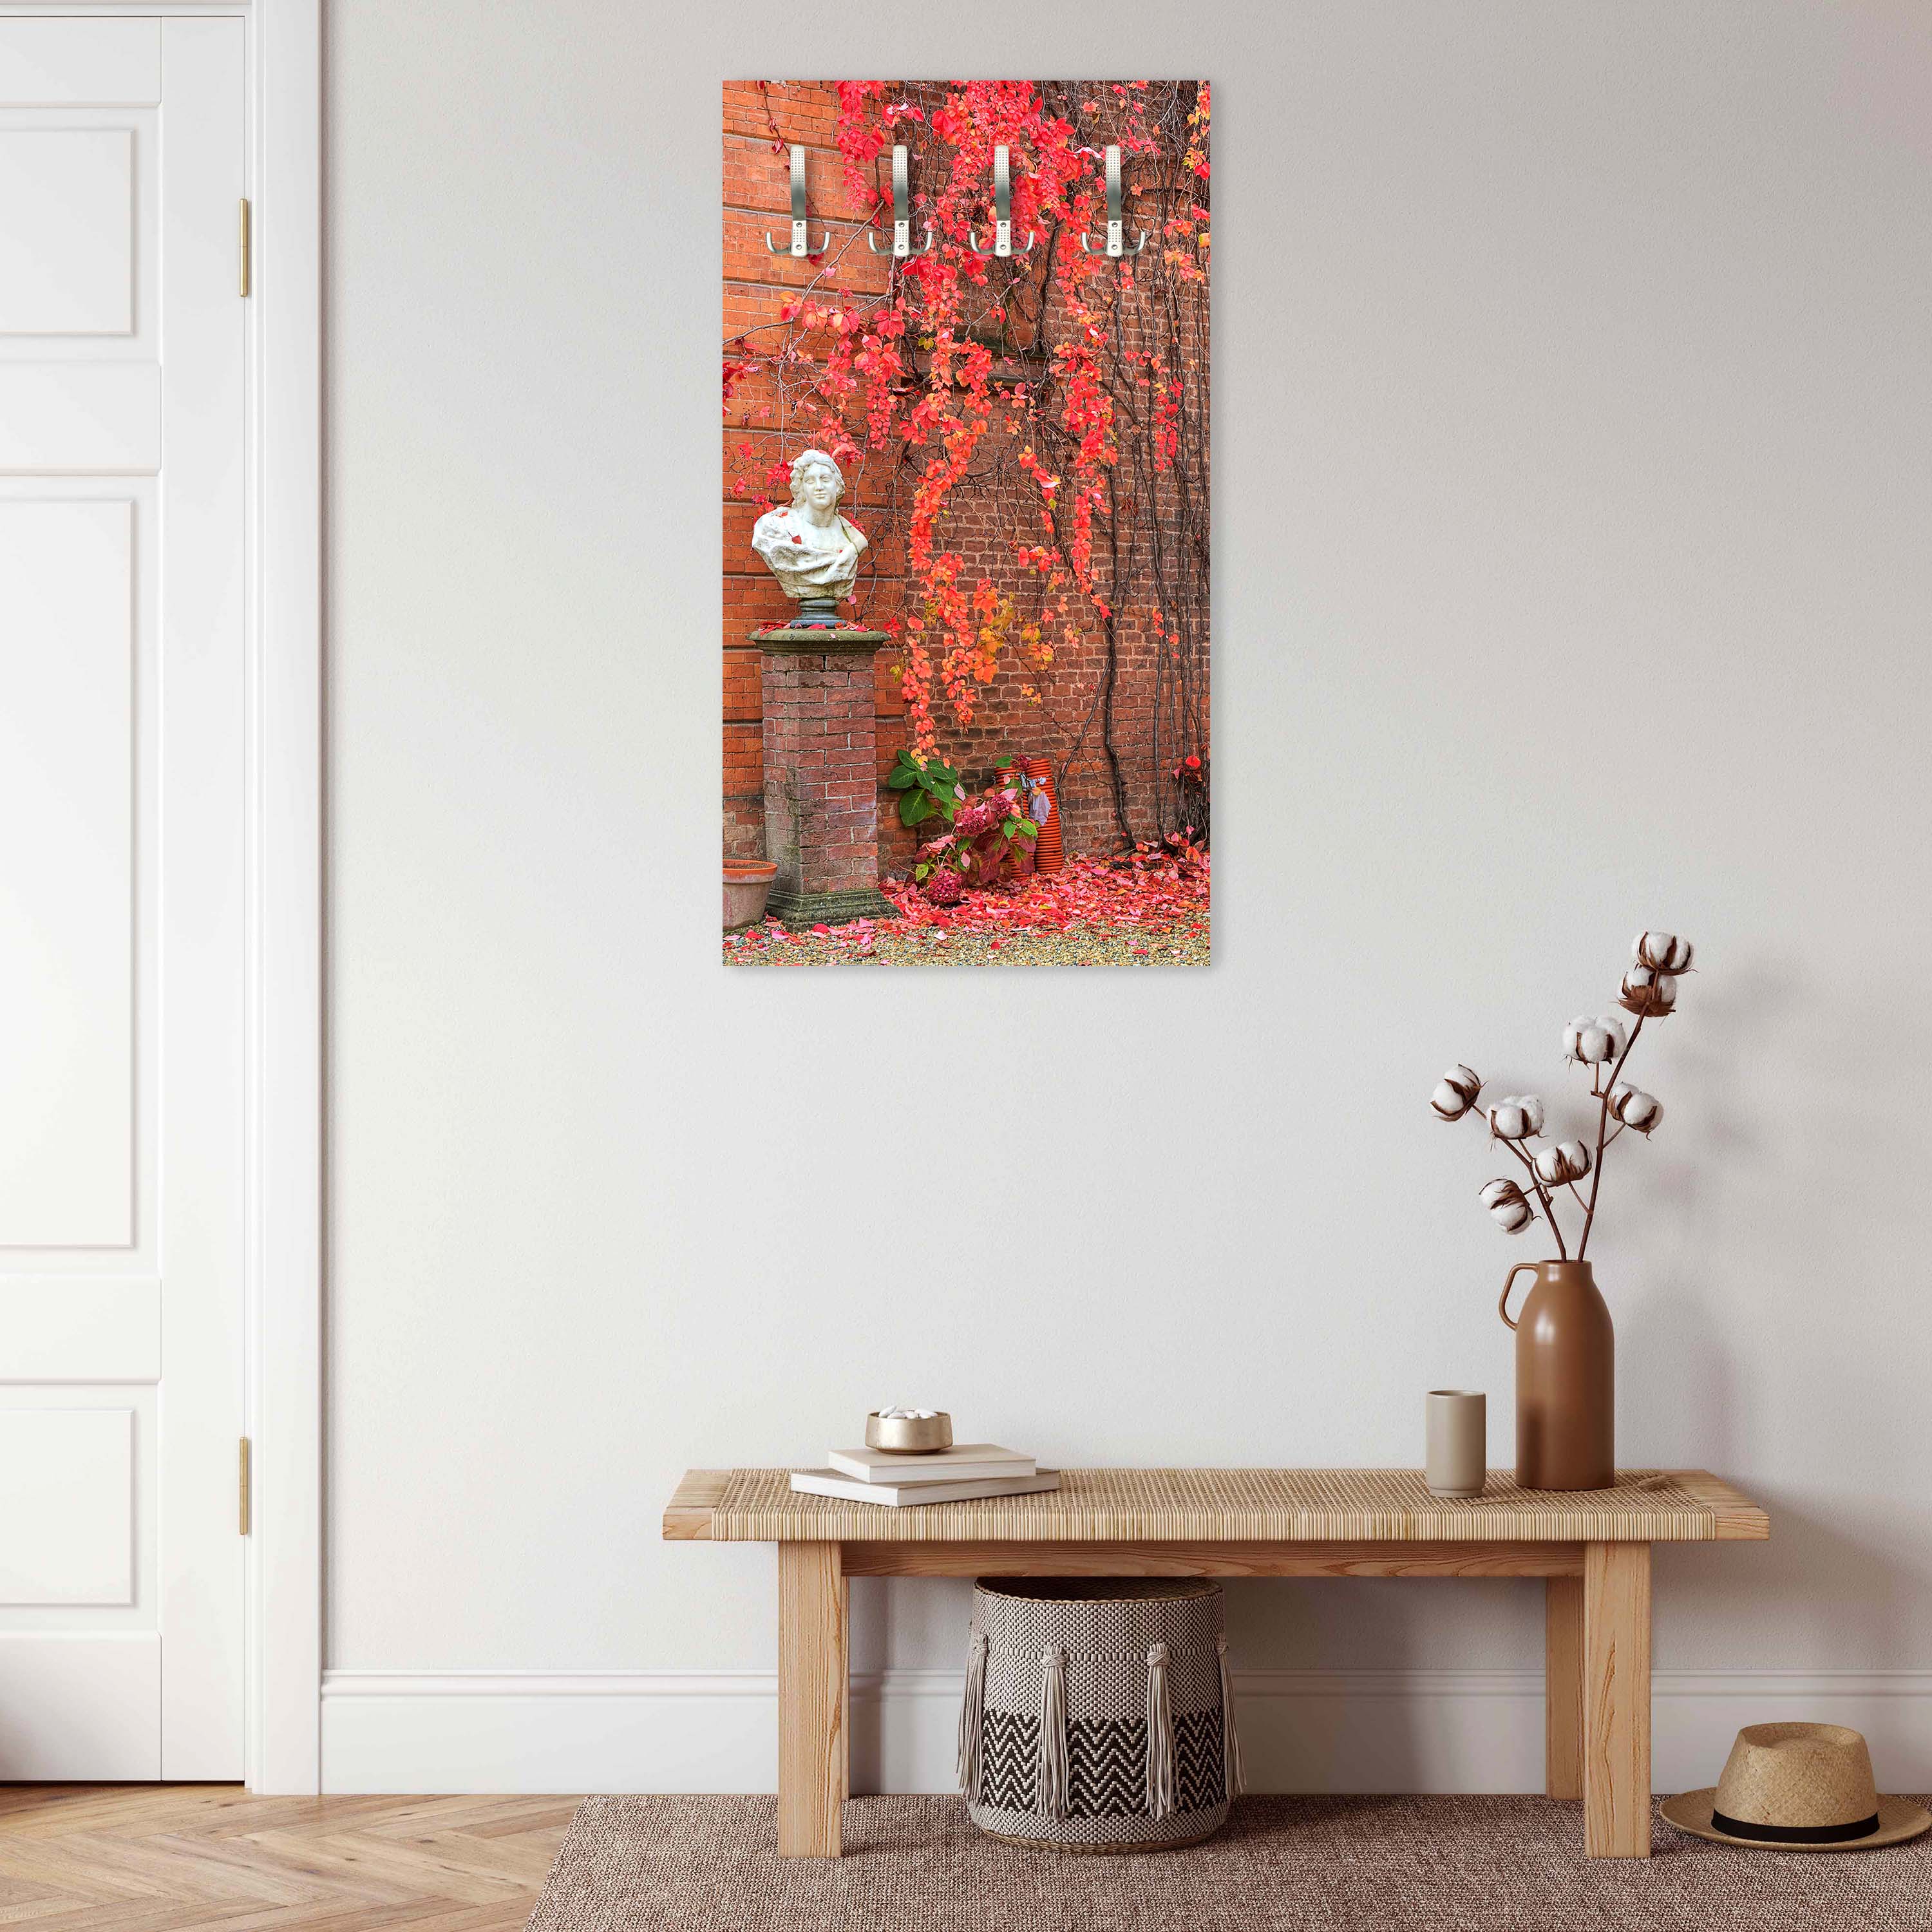 Garderobe Efeu mit roten Blättern wachsen auf einer roten Mauer M0789 entdecken - Bild 6